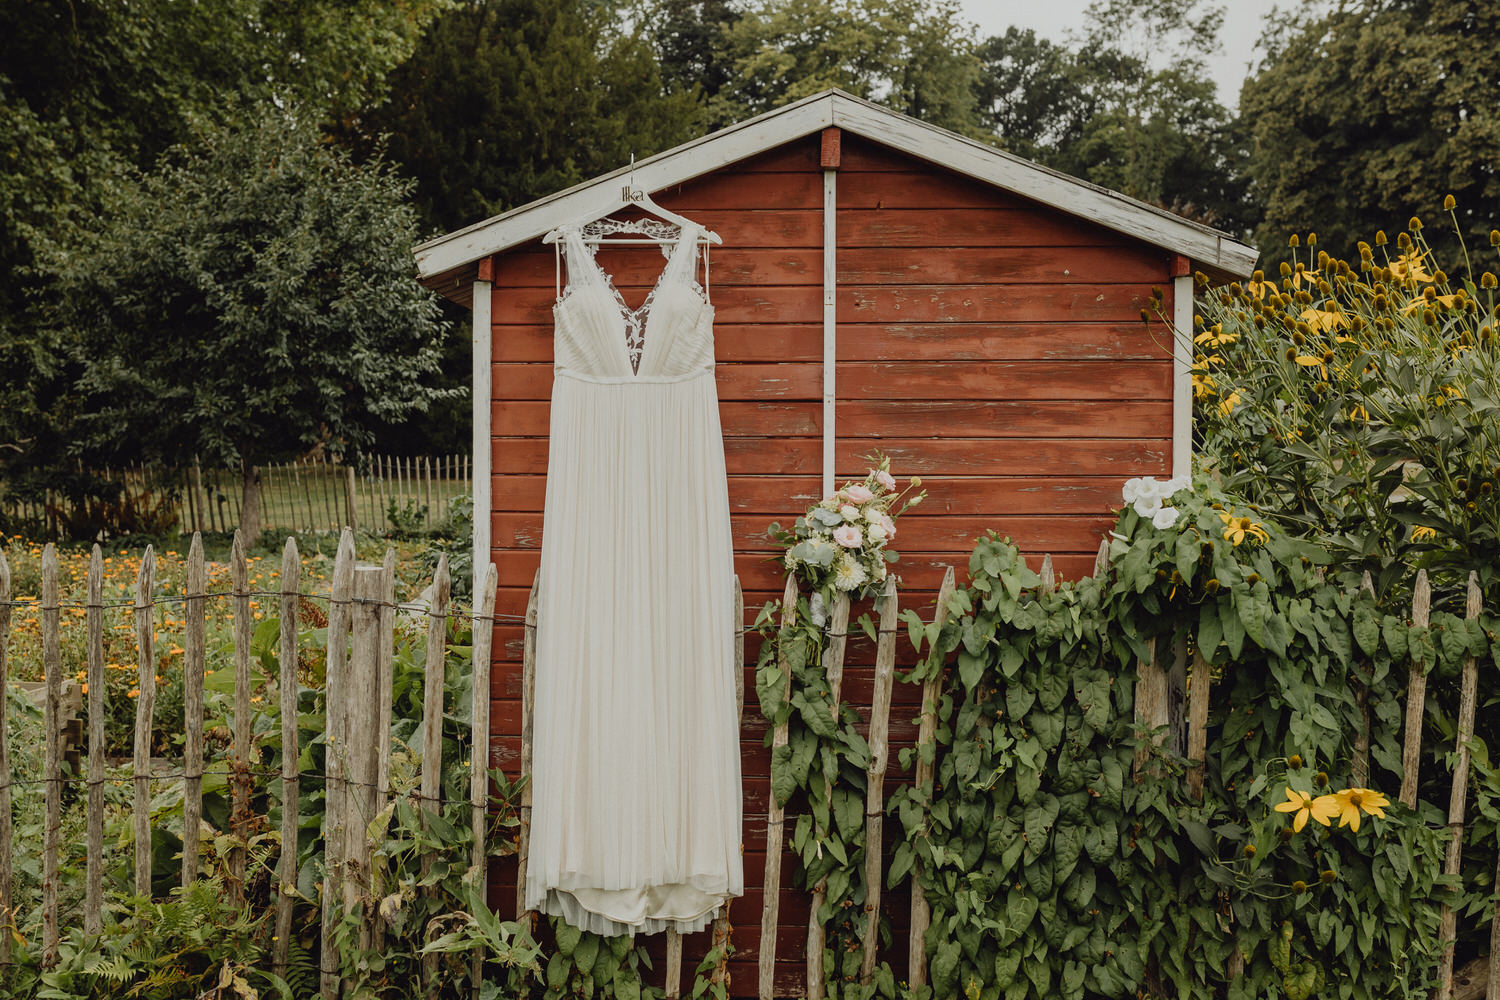 Detailbild vom Brautkleid und Brautstrauß im Garten beim getting Ready